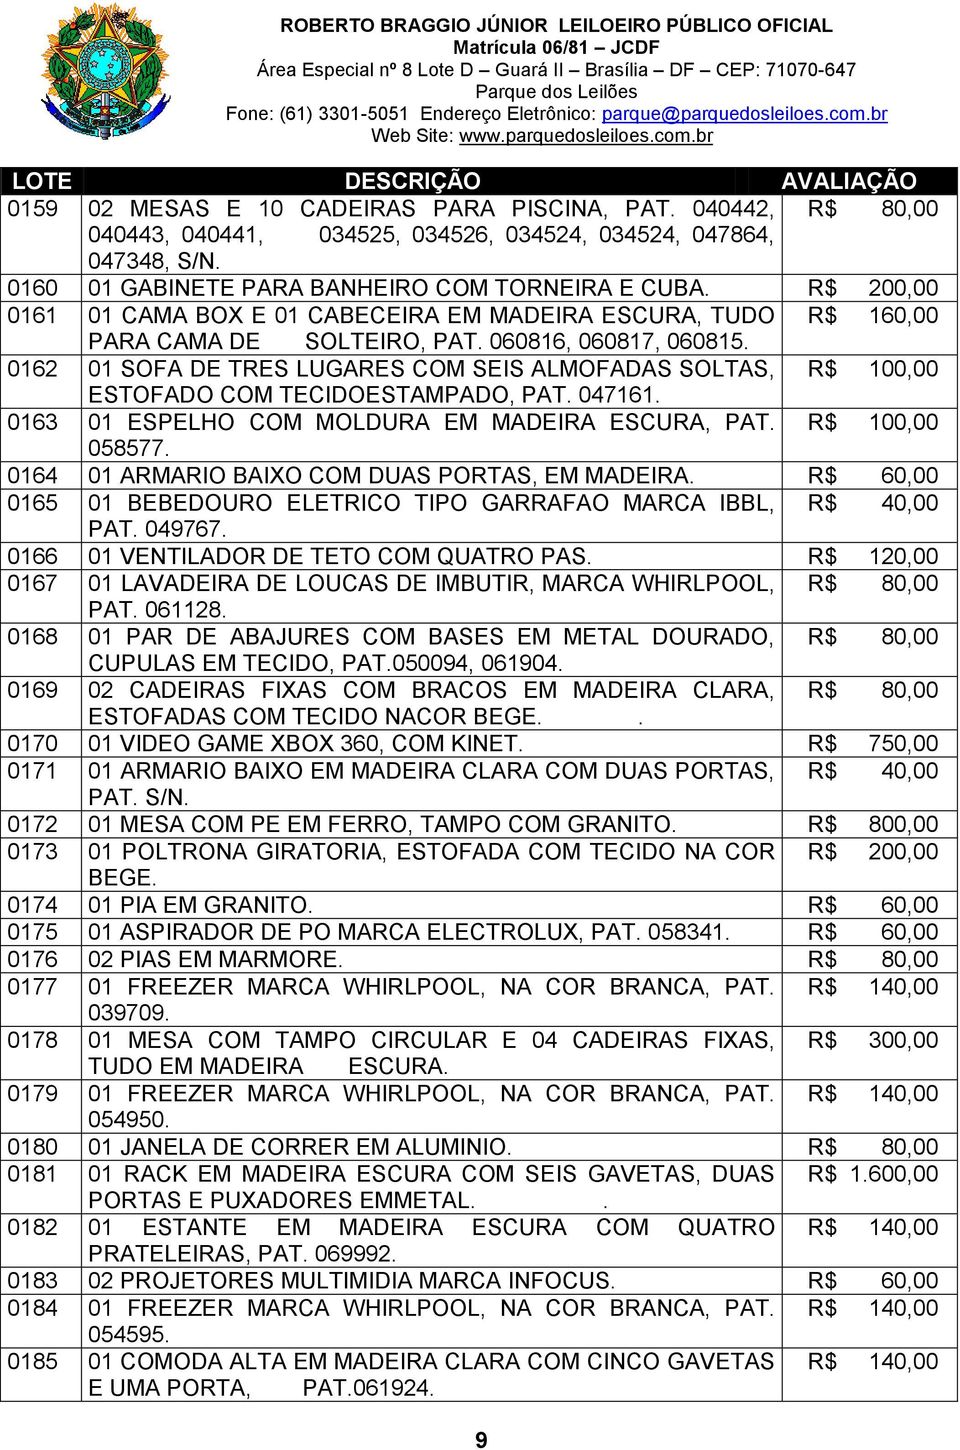 0162 01 SOFA DE TRES LUGARES COM SEIS ALMOFADAS SOLTAS, R$ 100,00 ESTOFADO COM TECIDOESTAMPADO, PAT. 047161. 0163 01 ESPELHO COM MOLDURA EM MADEIRA ESCURA, PAT. R$ 100,00 058577.